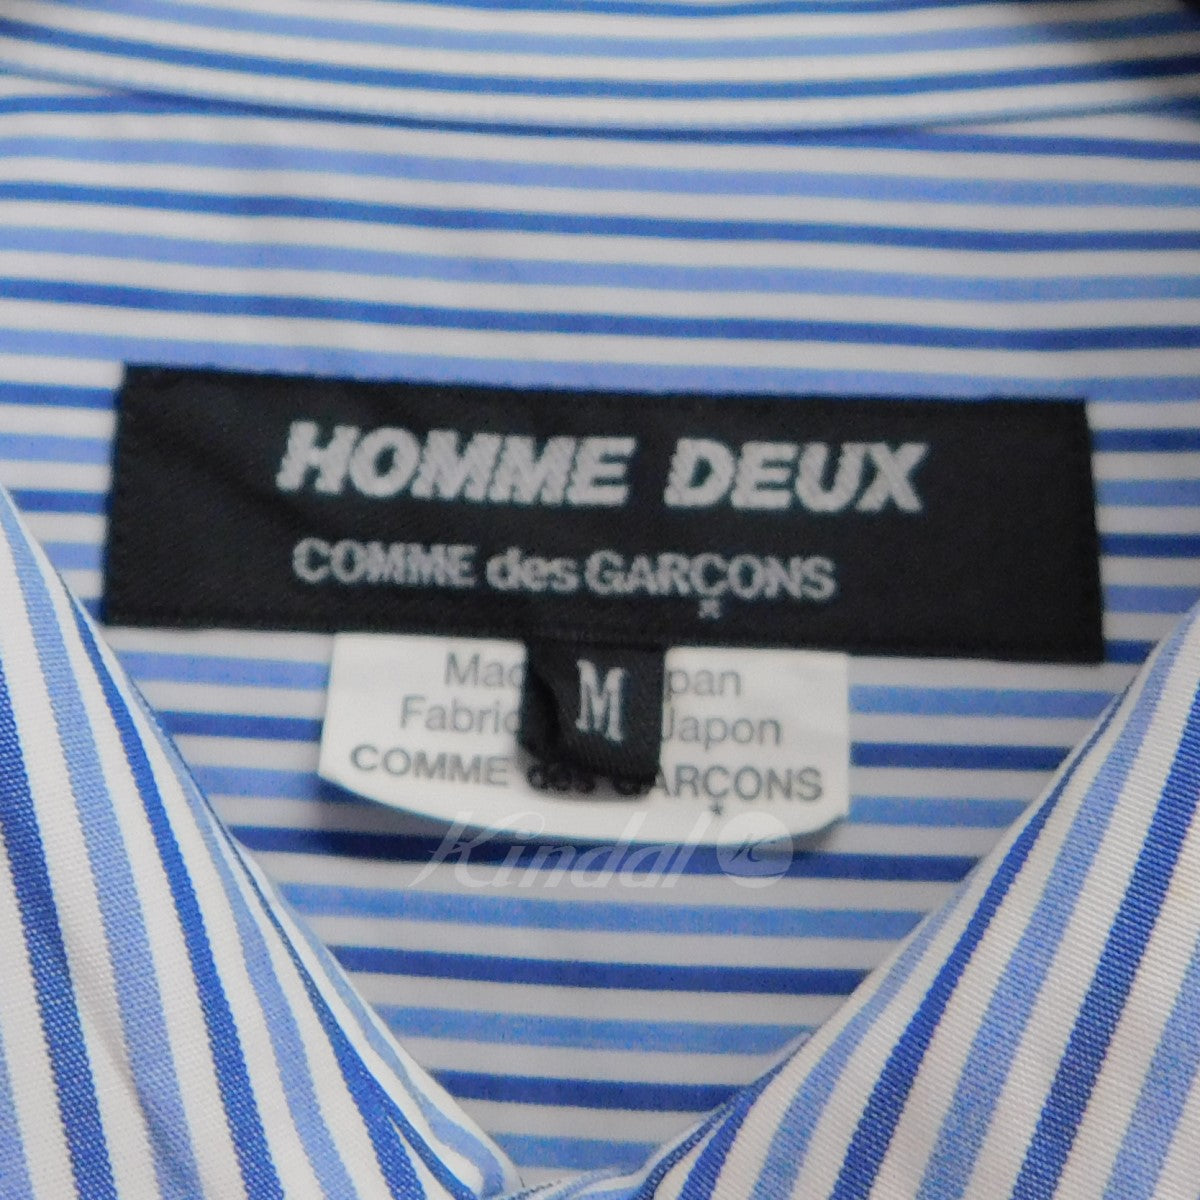 COMME des GARCONS HOMME DEUX(コムデギャルソンオムドゥ) 切替ストライプシャツ